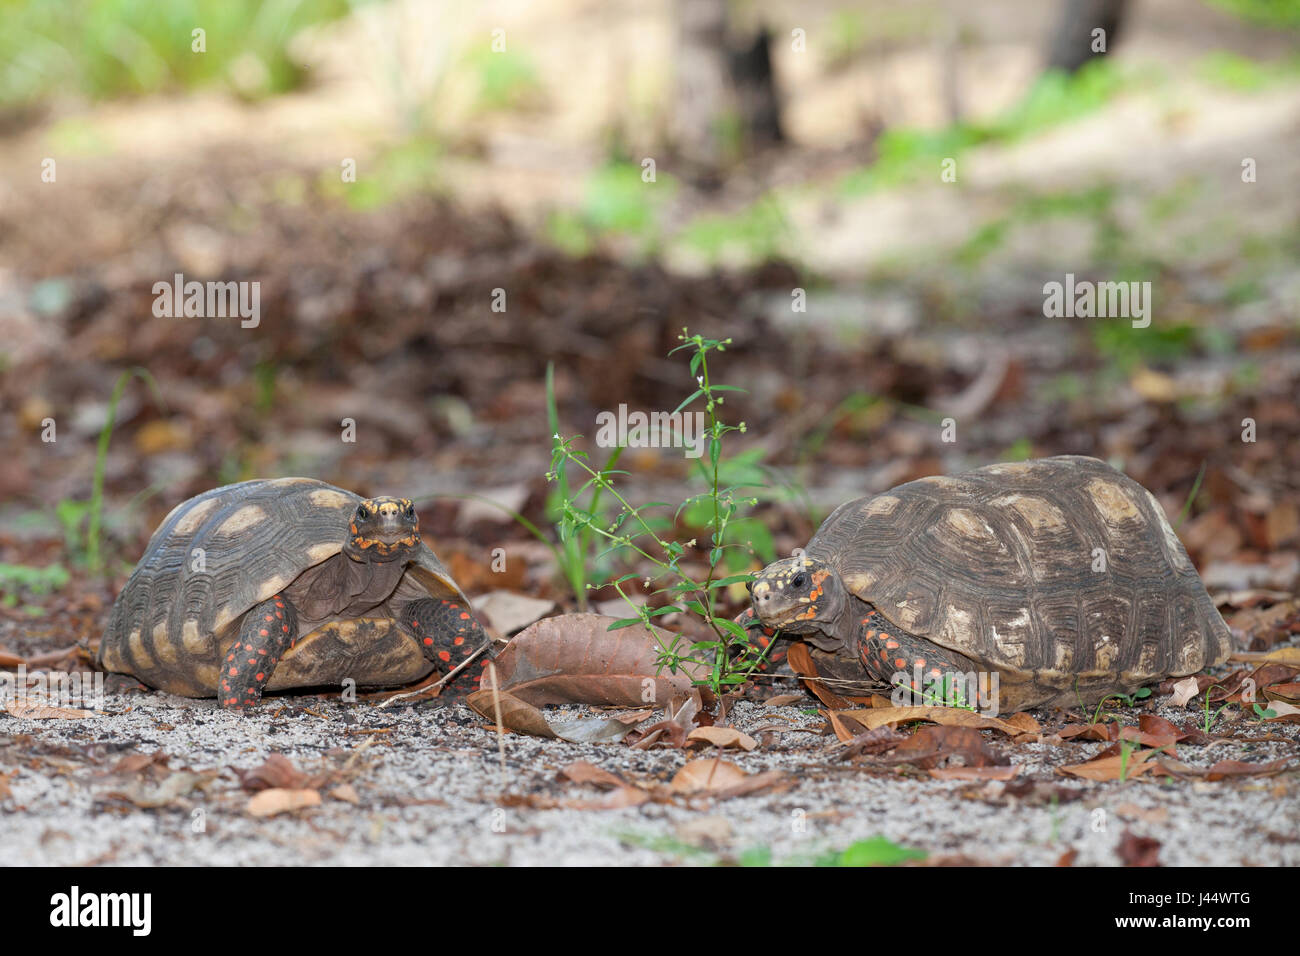 Photo de deux tortues à pieds rouges sur le sol forestier Banque D'Images